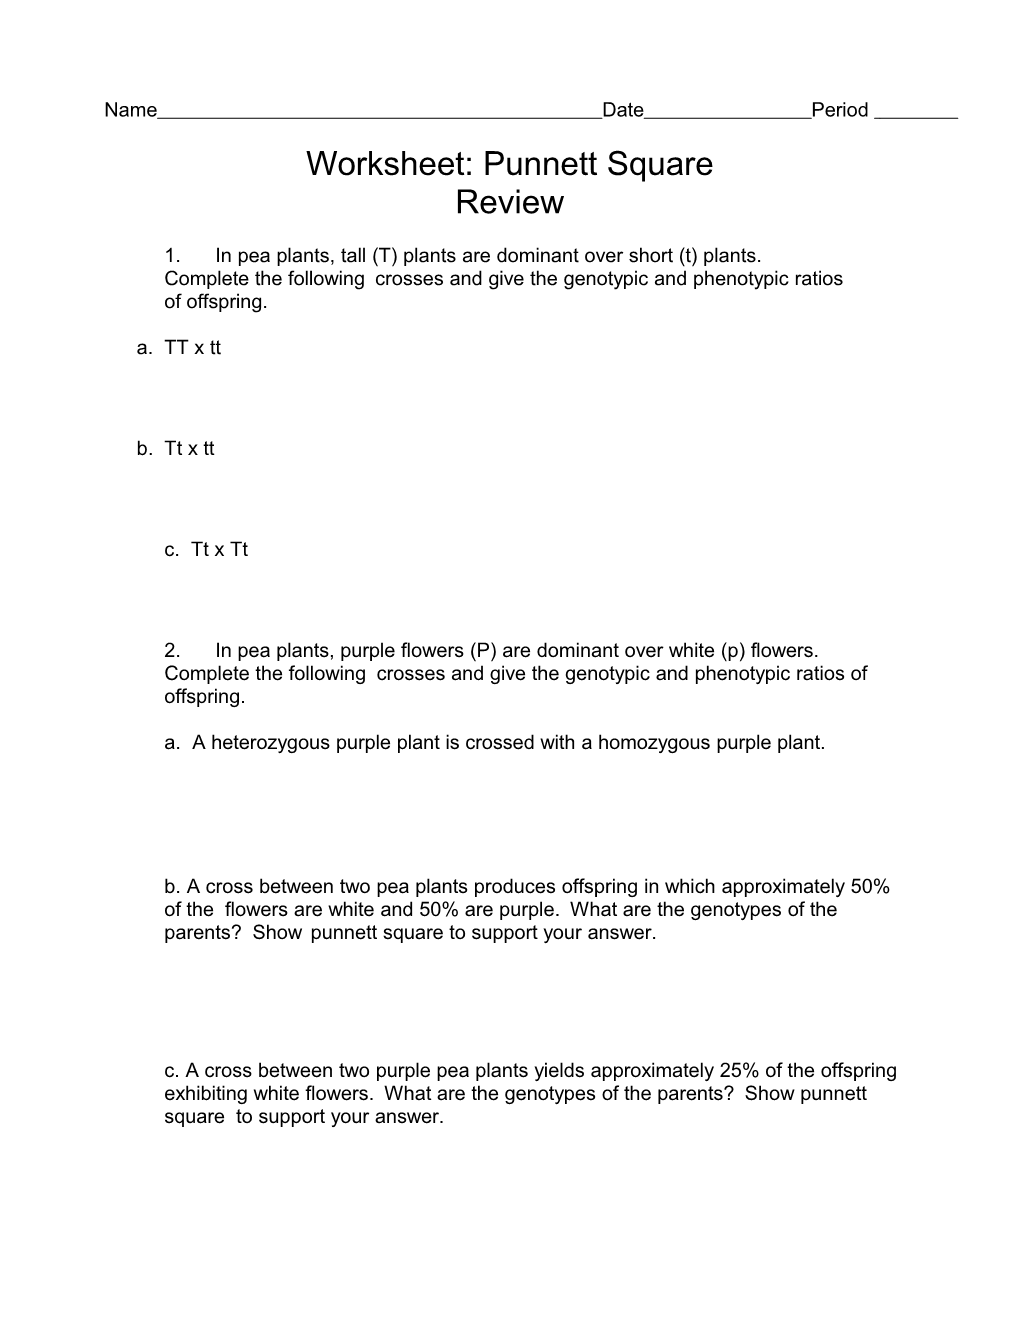 Worksheet Punnett Square Review 2010